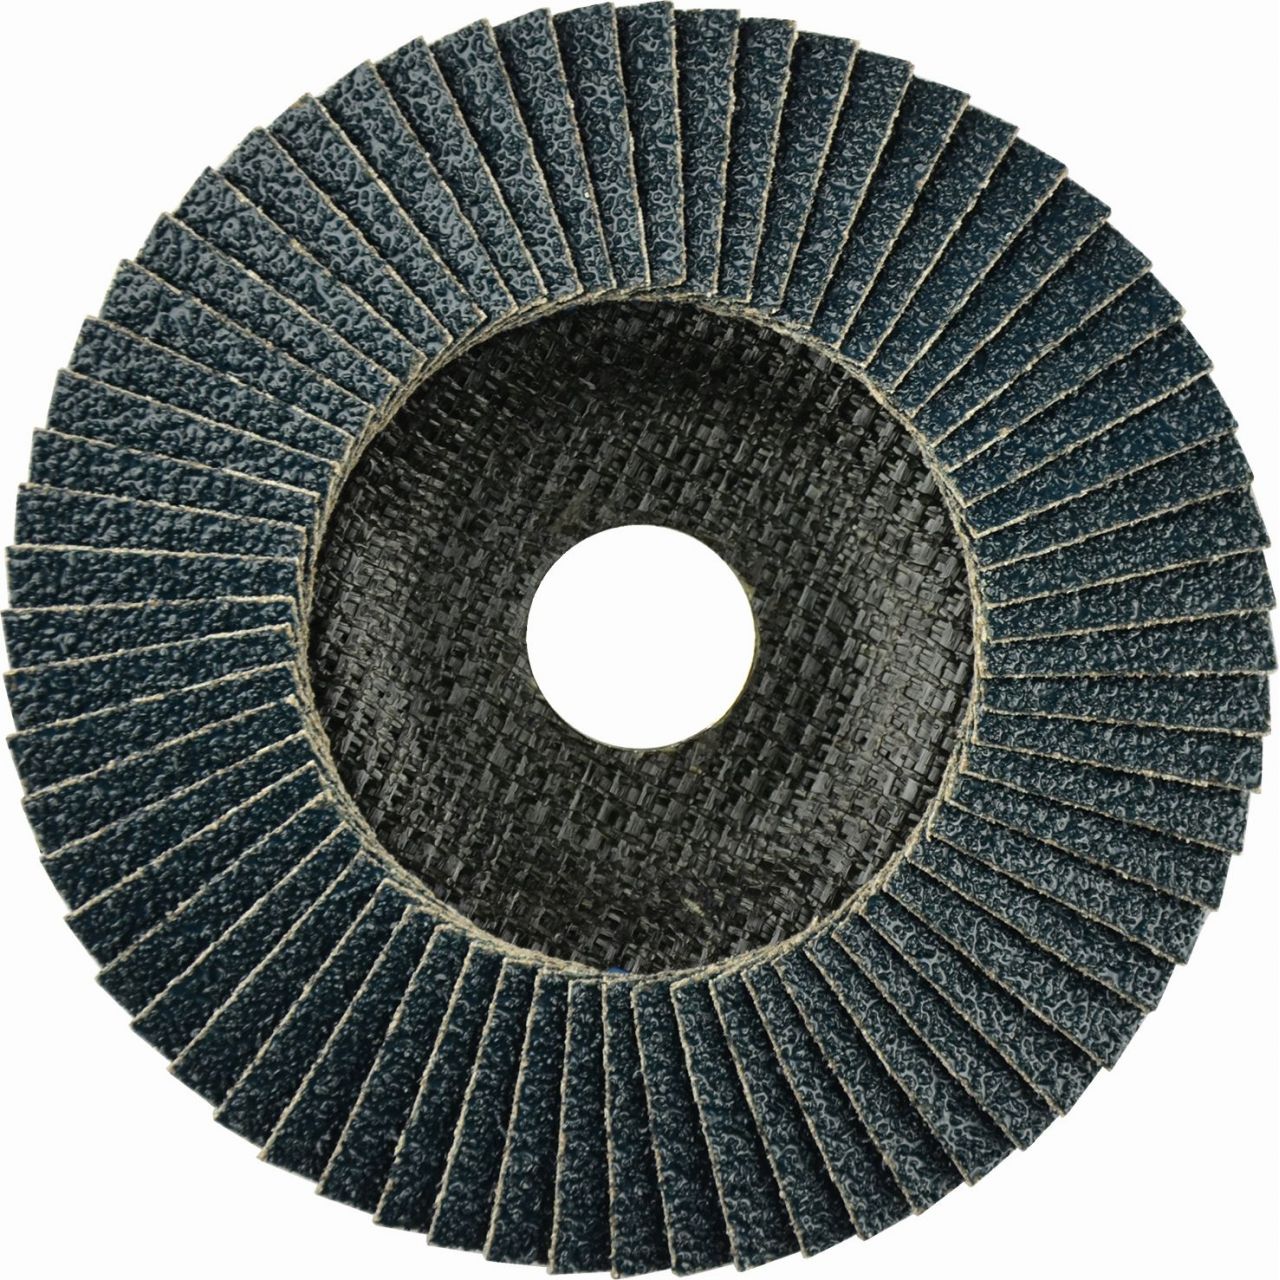 Disco de láminas abrasivo Zirconio ZIRCON PLUS (G-AZ) de 180 mm grano 40 y base plana